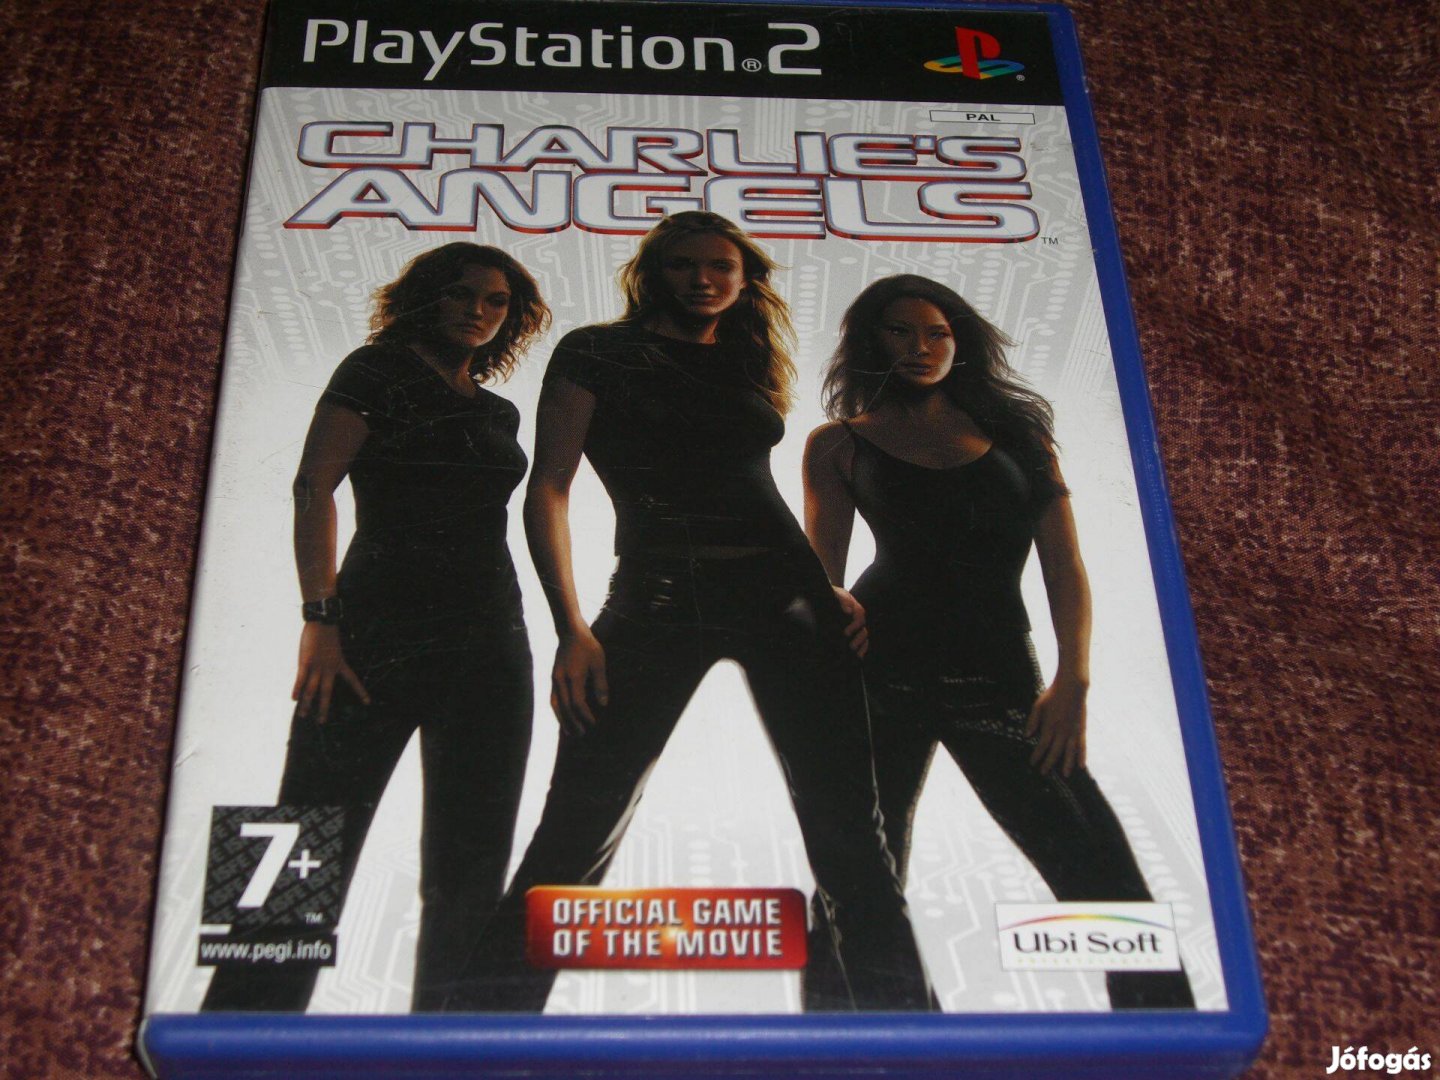 Charlie's Angels Playstation 2 eredeti lemez eladó ( 2500 Ft )